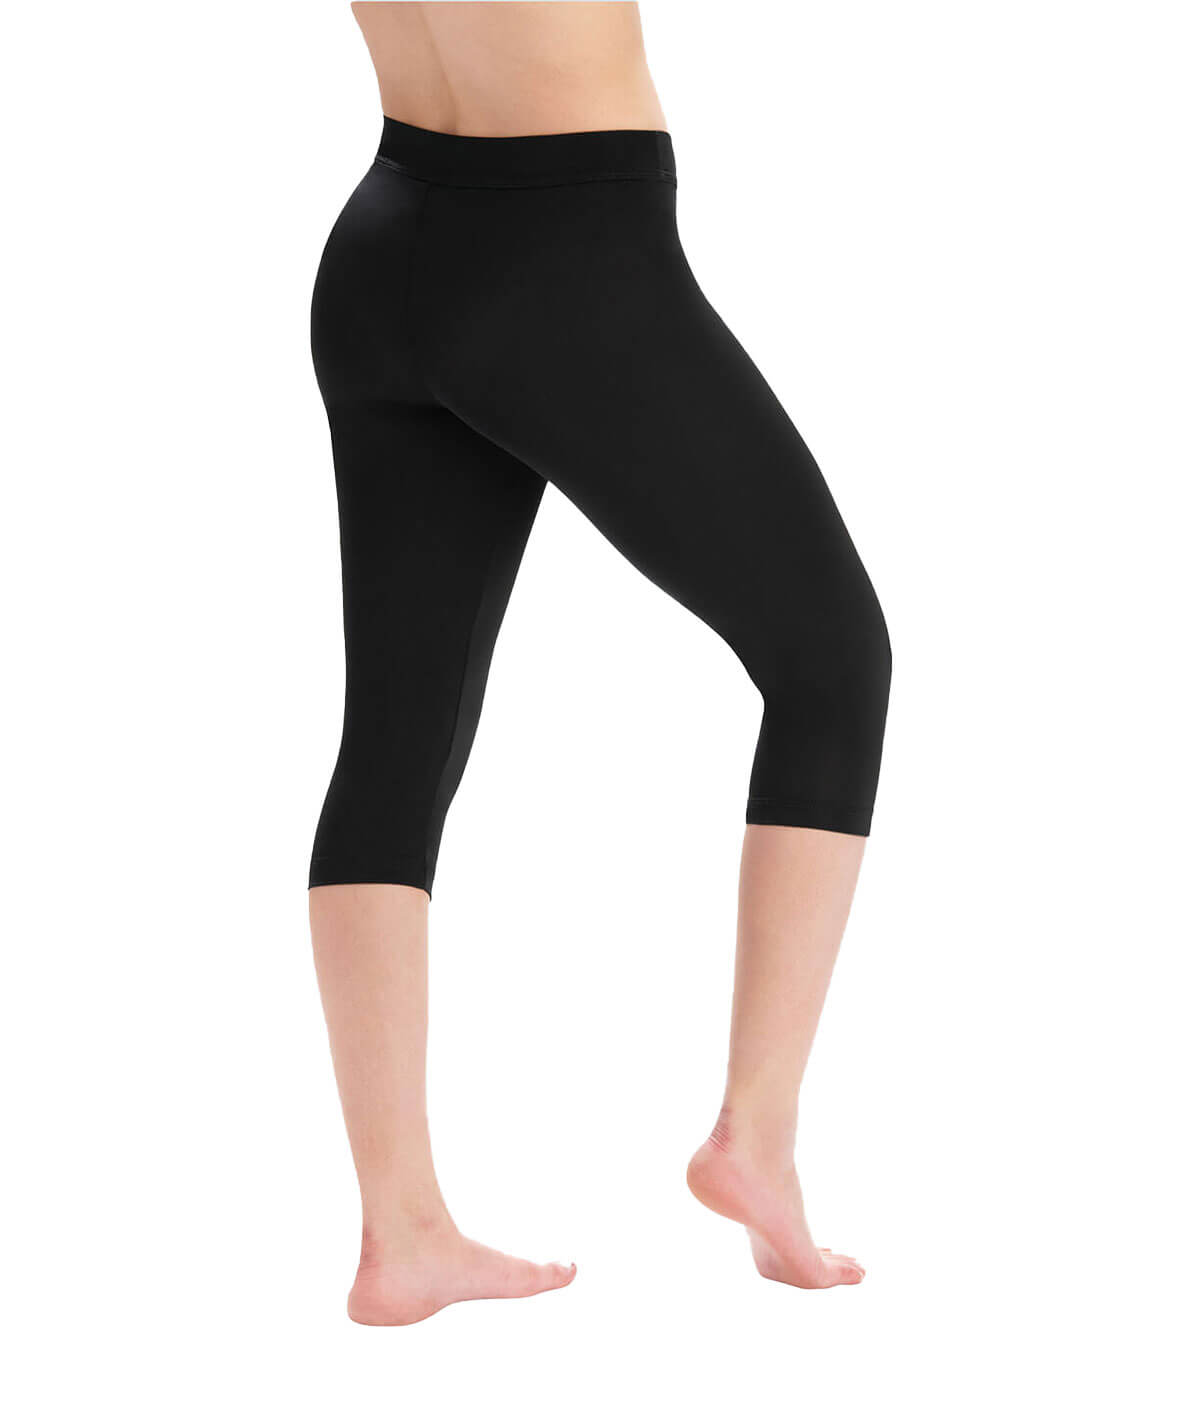 Plus Size Capris in Plus Size Pants | Black - Walmart.com